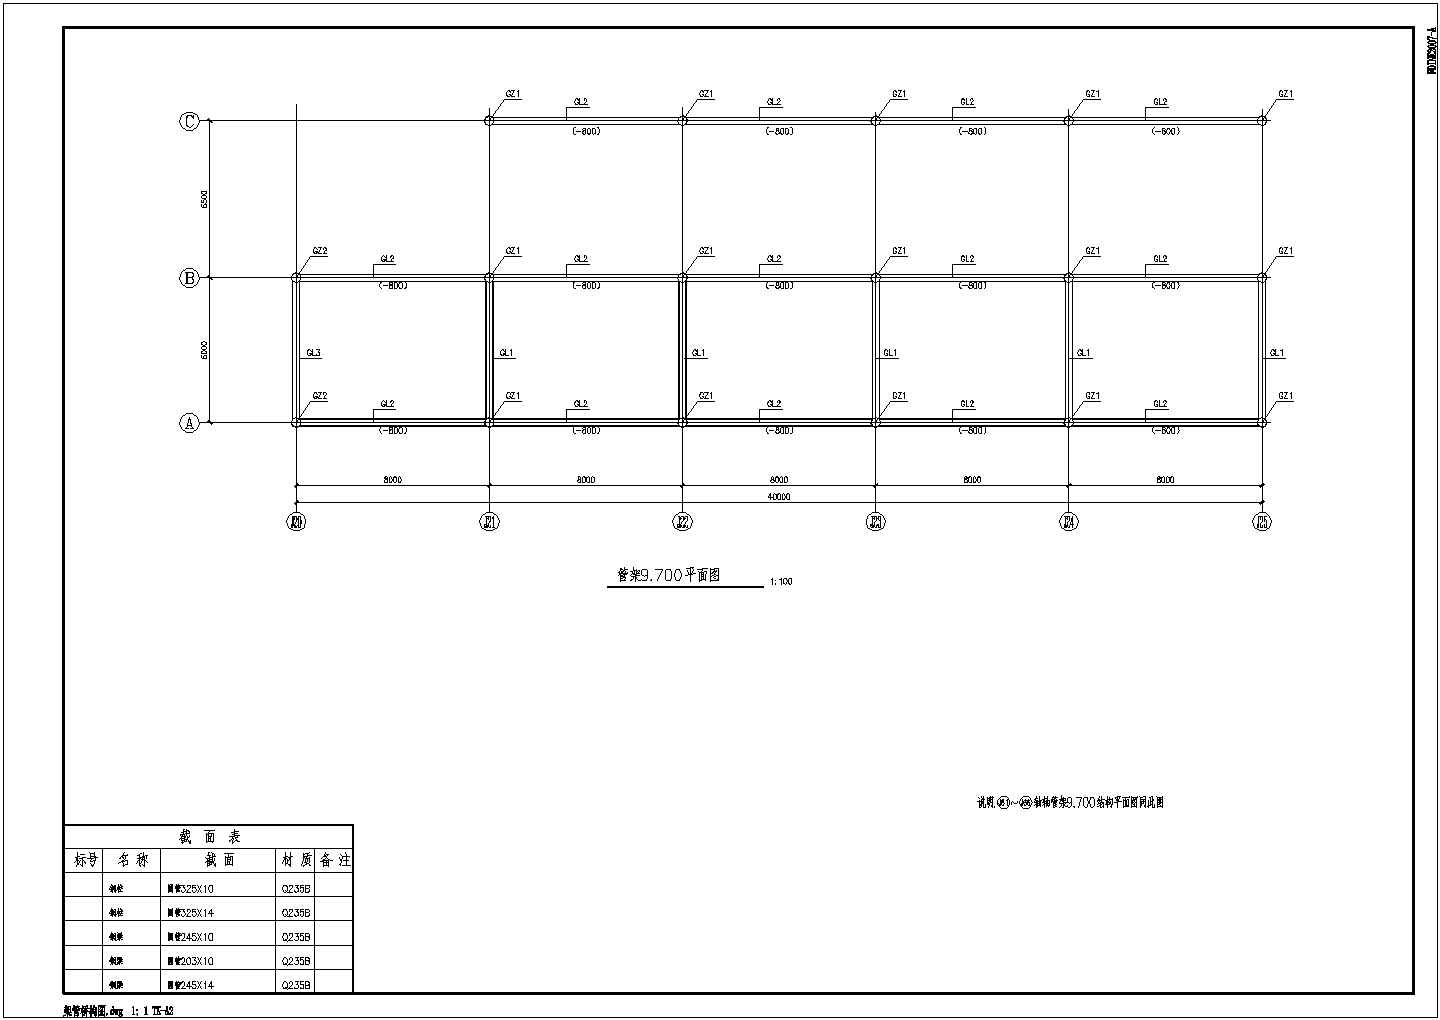 某水利码头工程钢结构管架CAD设计完整布置图